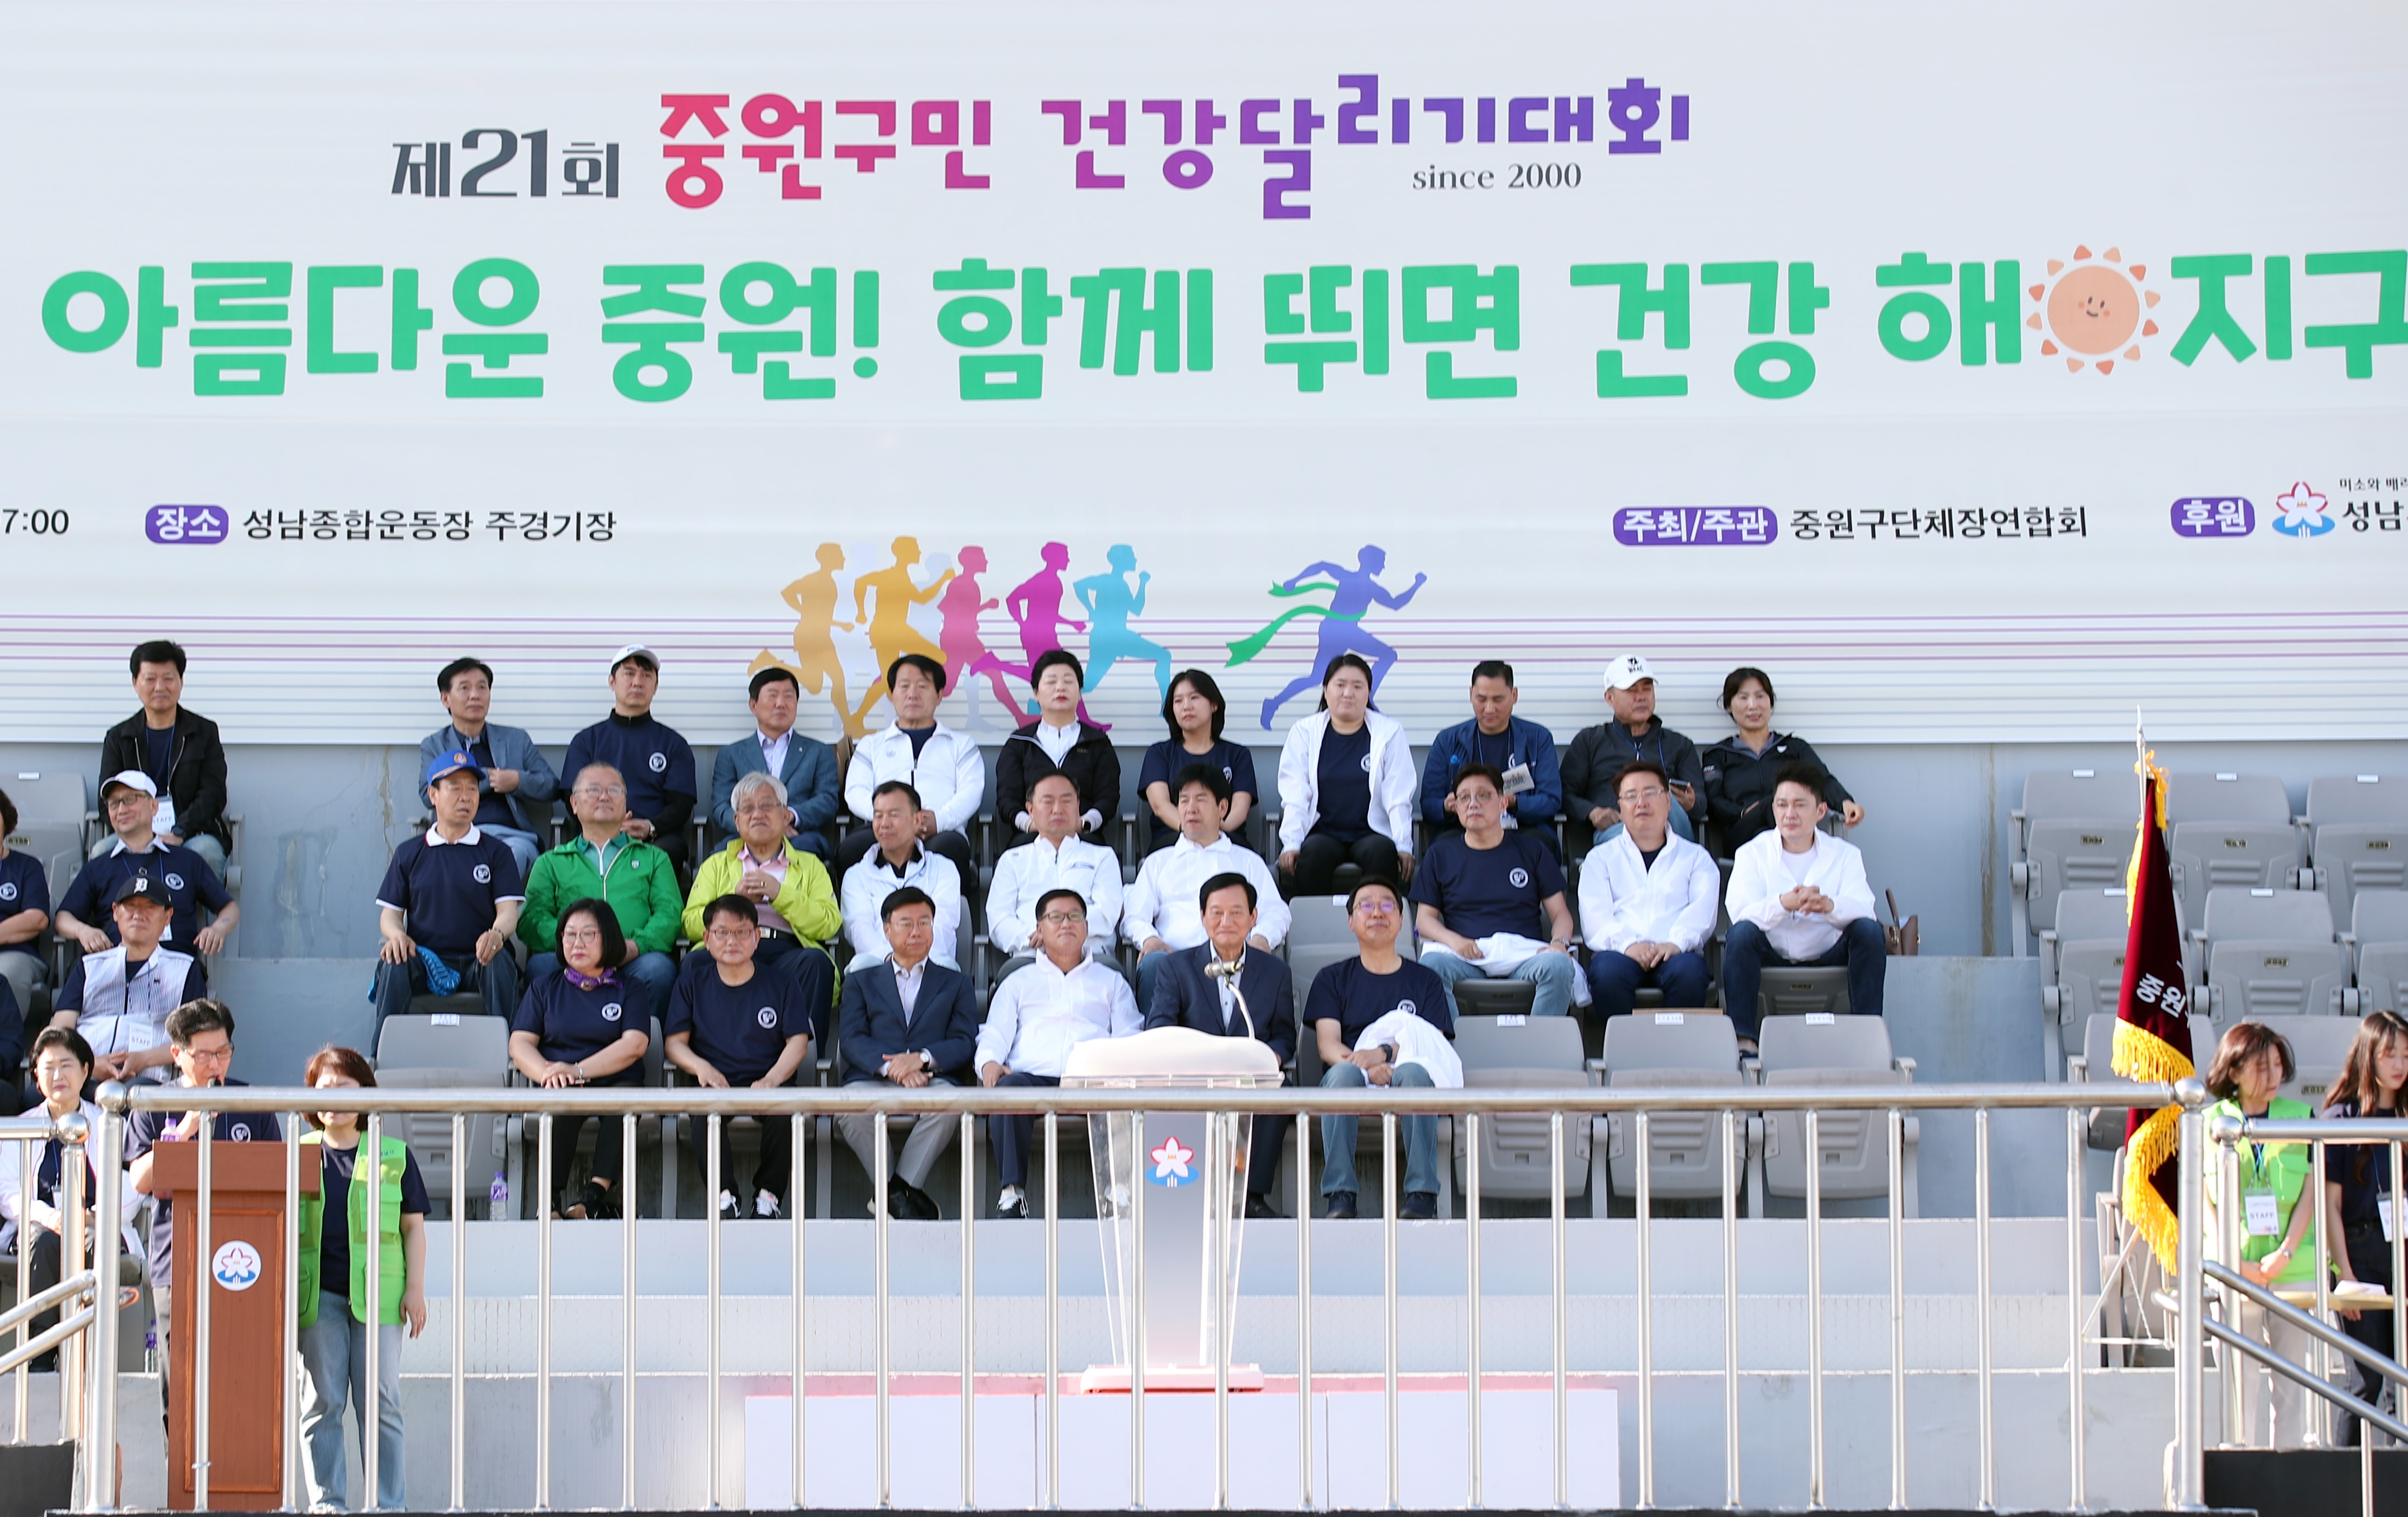  제21회 중원구민 건강달리기대회  - 2